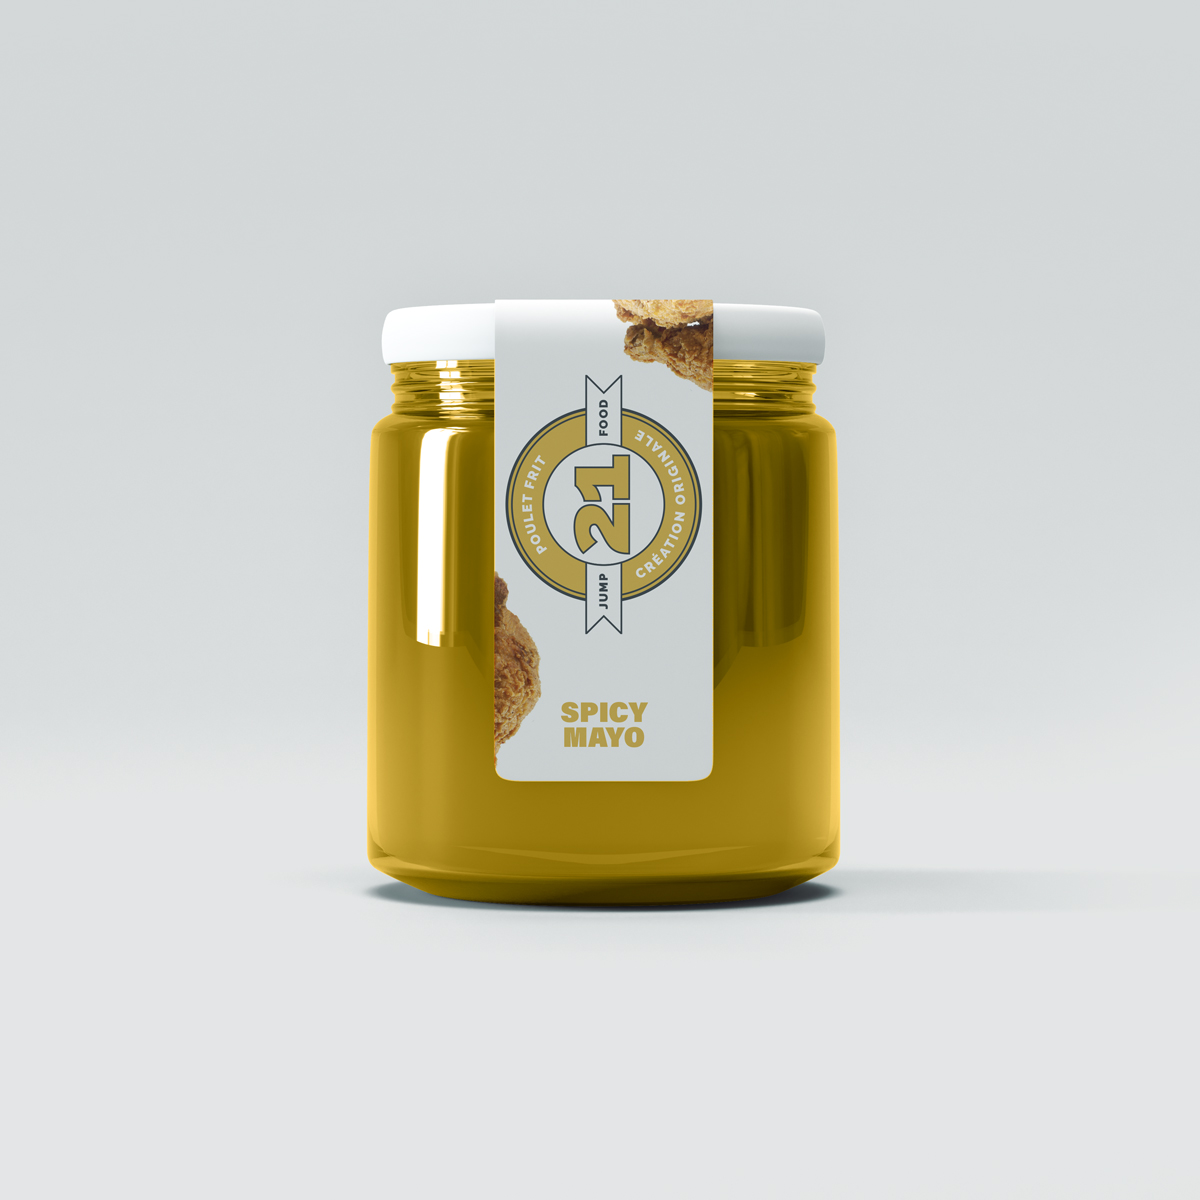 21 jump food fast food étiquette packaging sauce par Cabs art